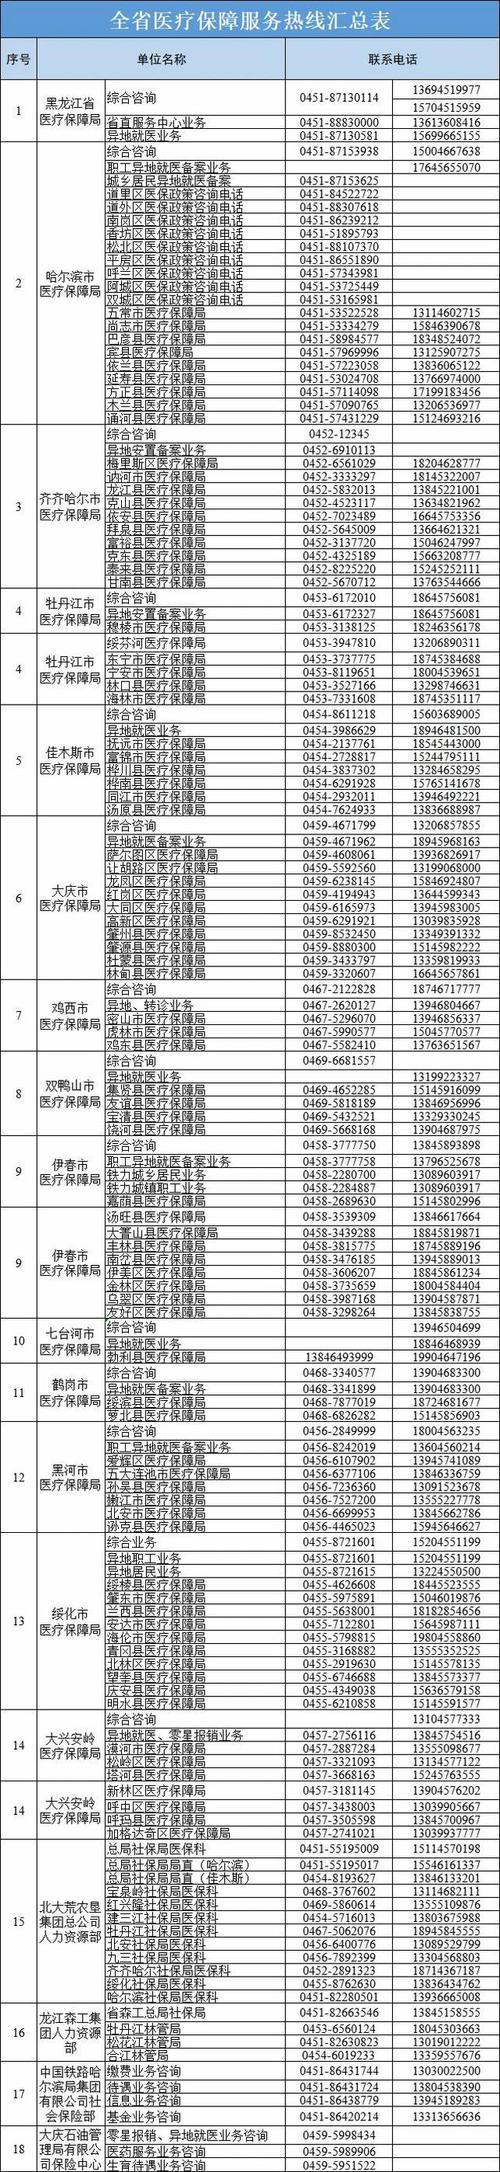 黑龙江省医疗保障系统服务热线电话更新 进一步优化医保公共咨询服务